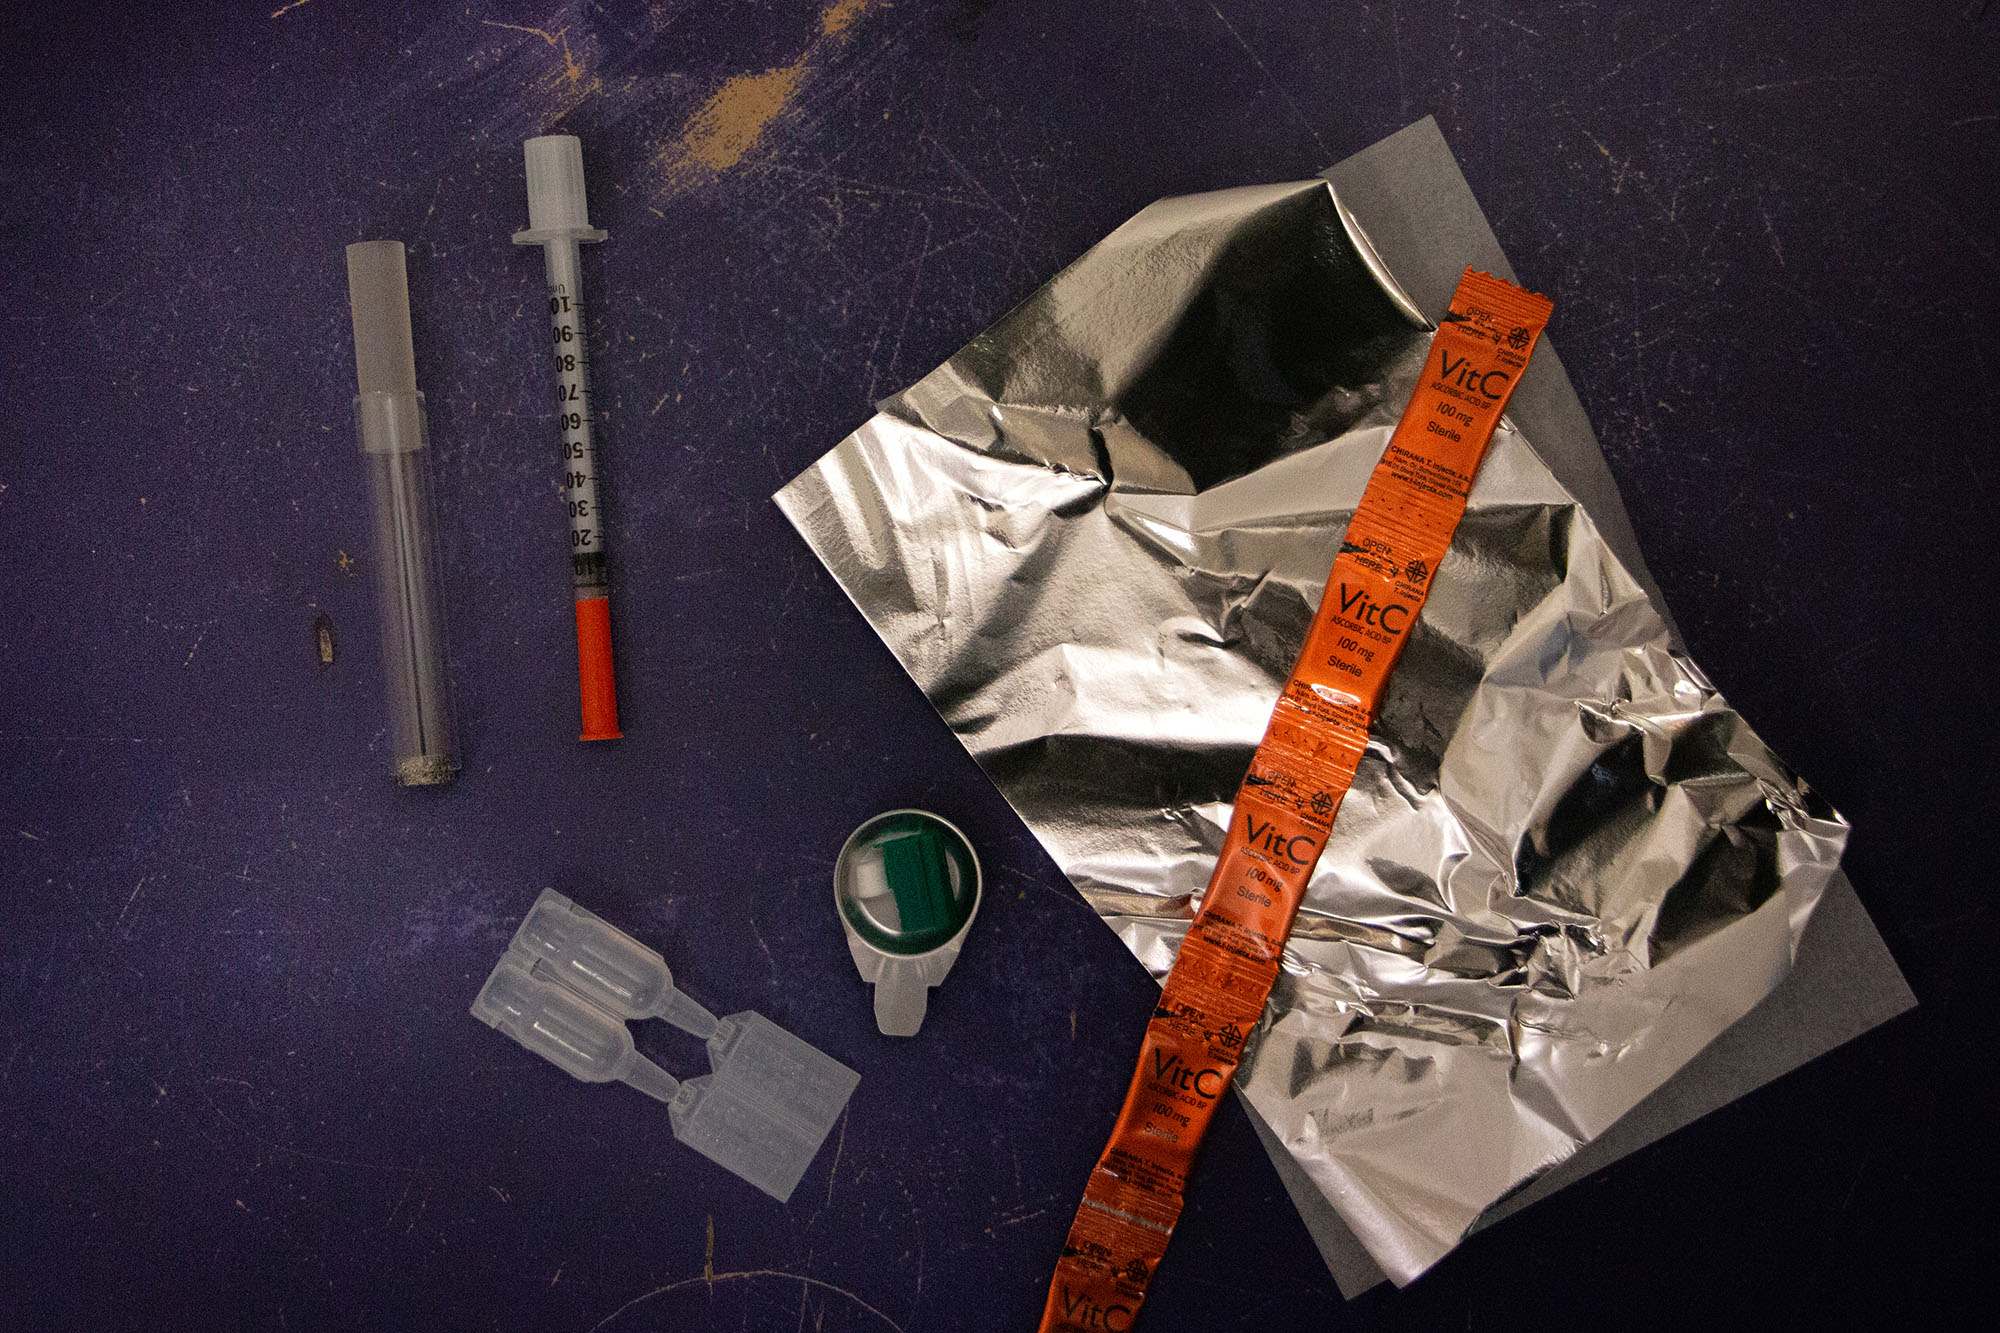 LAMA 05 - matériel stéril - seringue, pipe à crack, cup et filtre, capsule d'eau, aluminium non traité.jpg